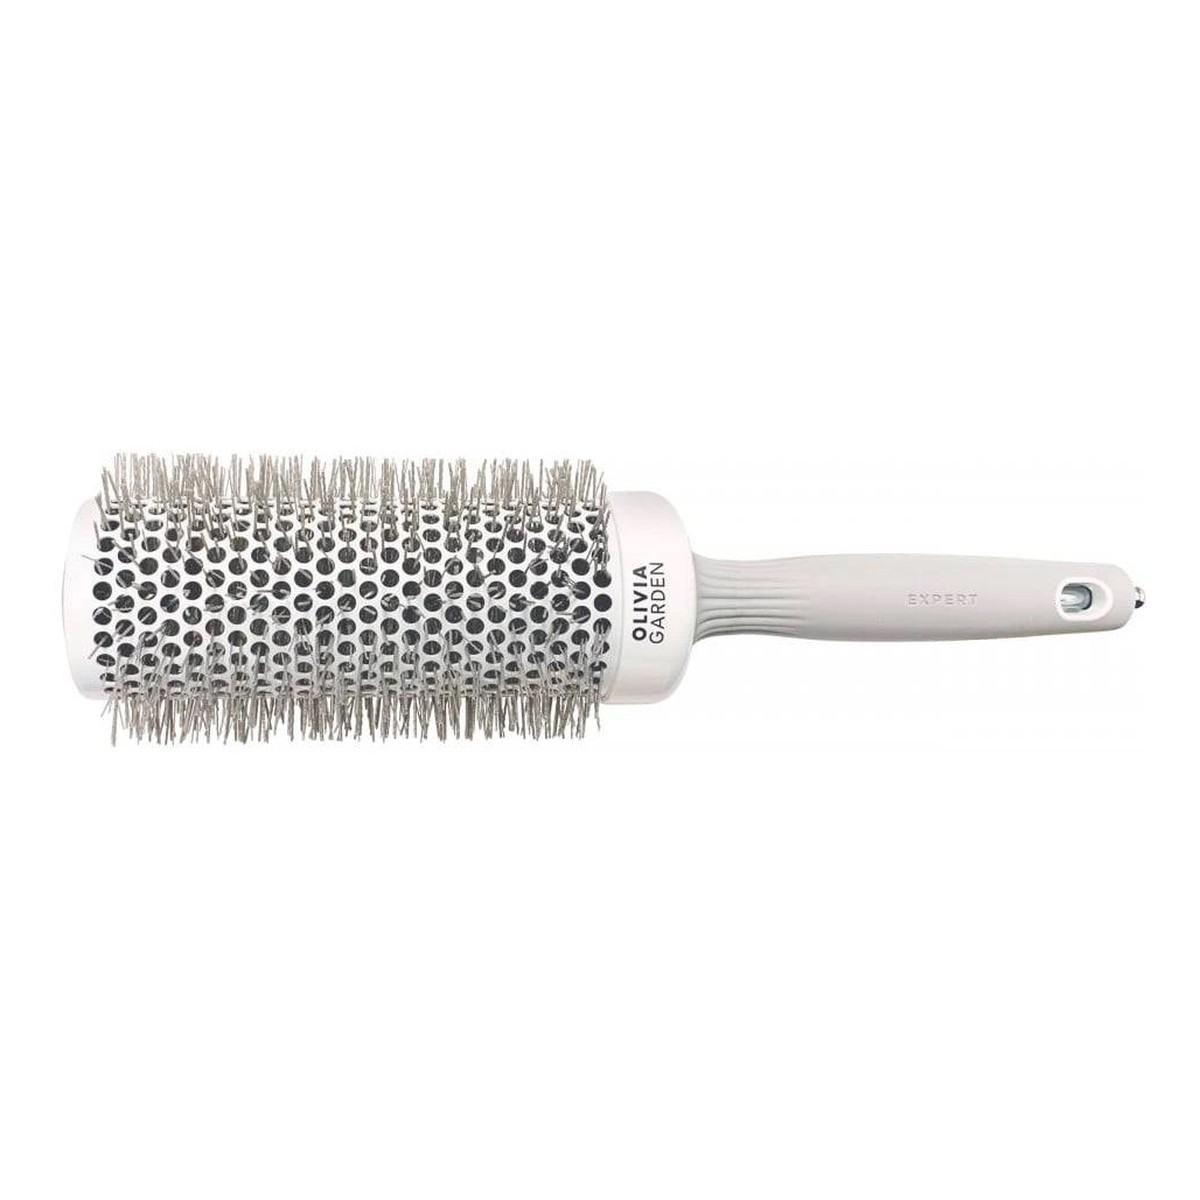 Olivia Garden Expert blowout speed wavy bristles szczotka do suszenia i modelowania włosów white/grey 55mm